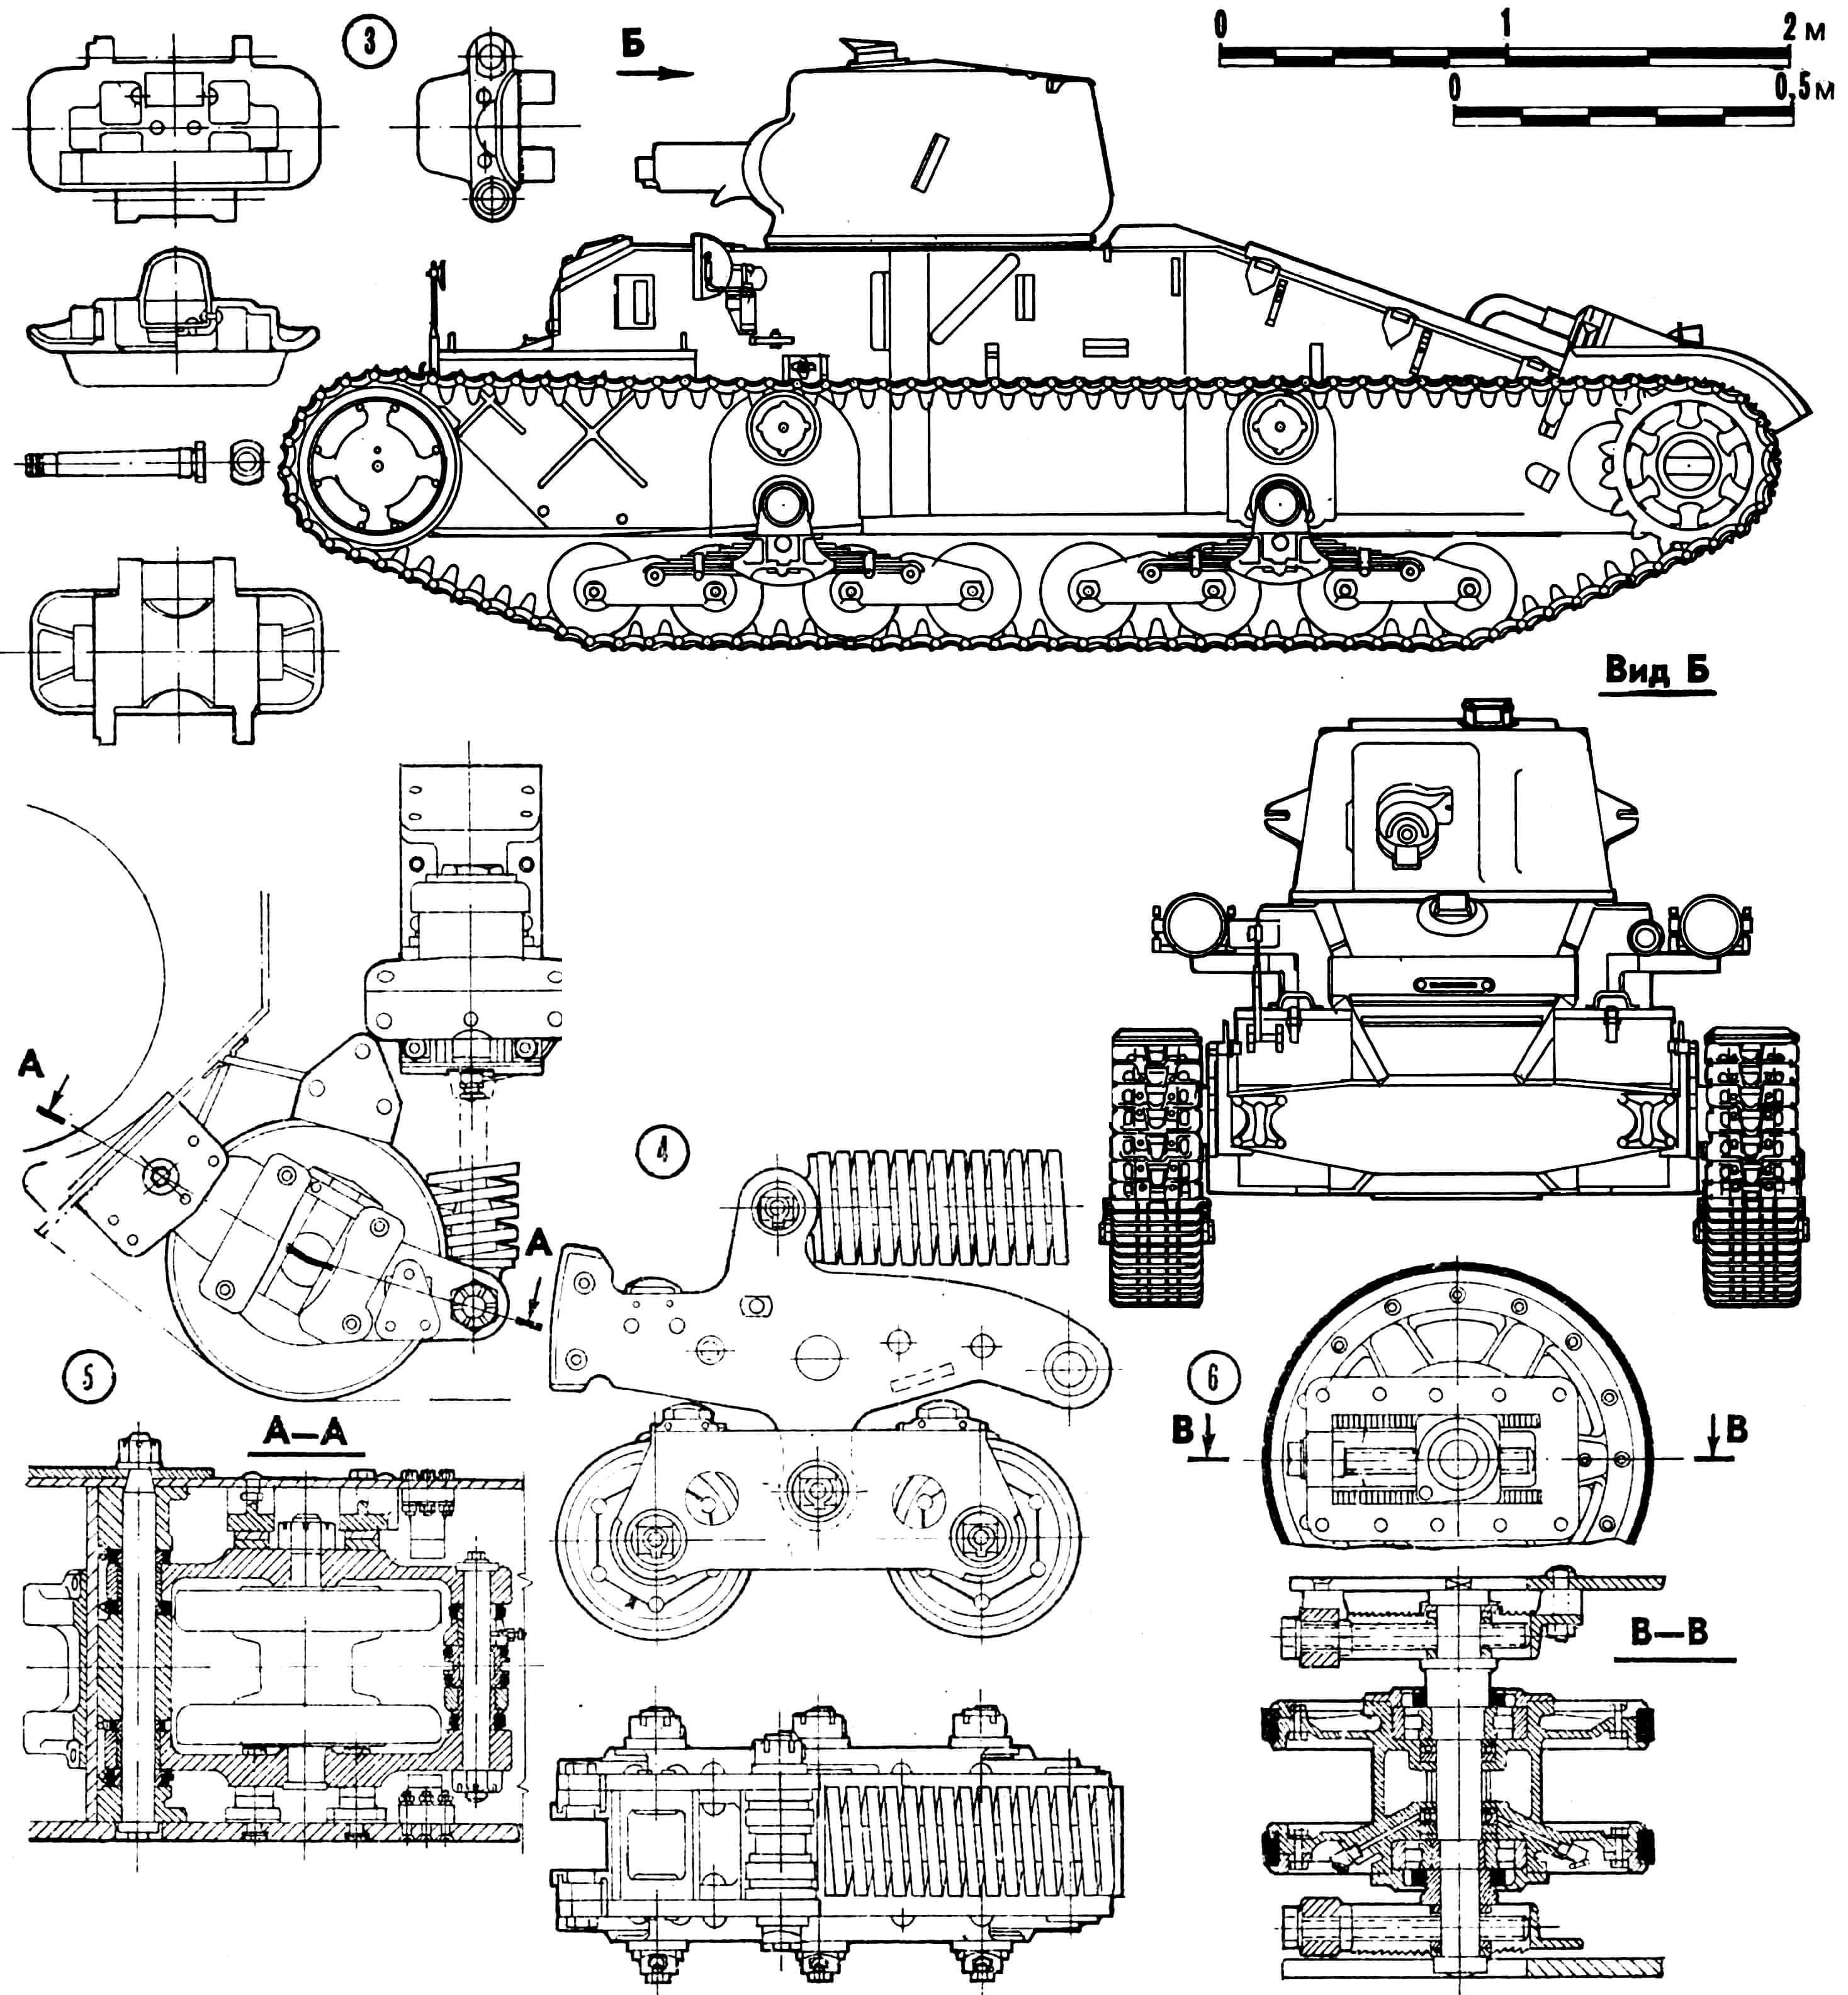 Пехотный танк Мк.II «Матильда»: 1— перископический прибор наблюдения, 2 — ведущее колесо, 3 — трак гусеничной цепи, 4 — тележка подвески, 5 — вспомогательный каток, 6 — направляющее колесо, 7 —дымовые мортирки, 8 — дополнительный топливный бак, 9 — выхлопная труба, 10 — люк командира танка, 11 — перископический прибор наблюдения механика-водителя, 12 — фара.